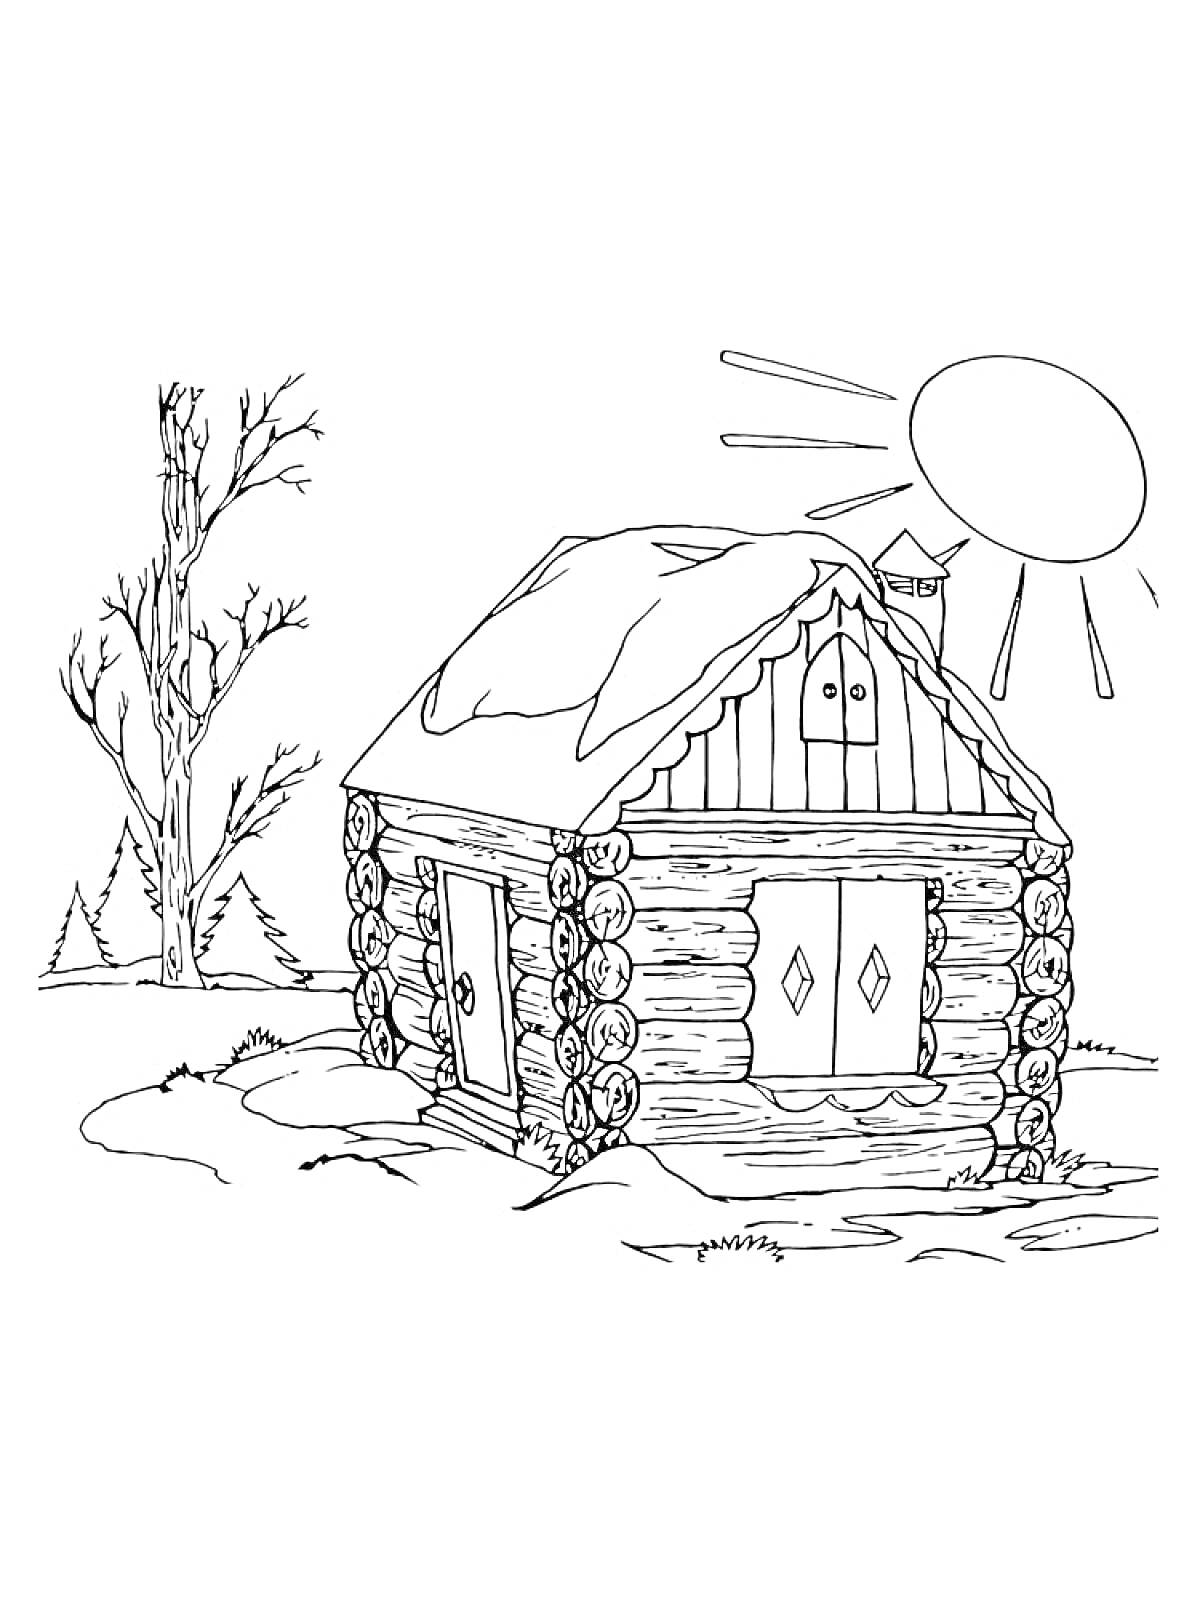 Раскраска Изба зимой со снегом на крыше, дерево и солнце на заднем плане